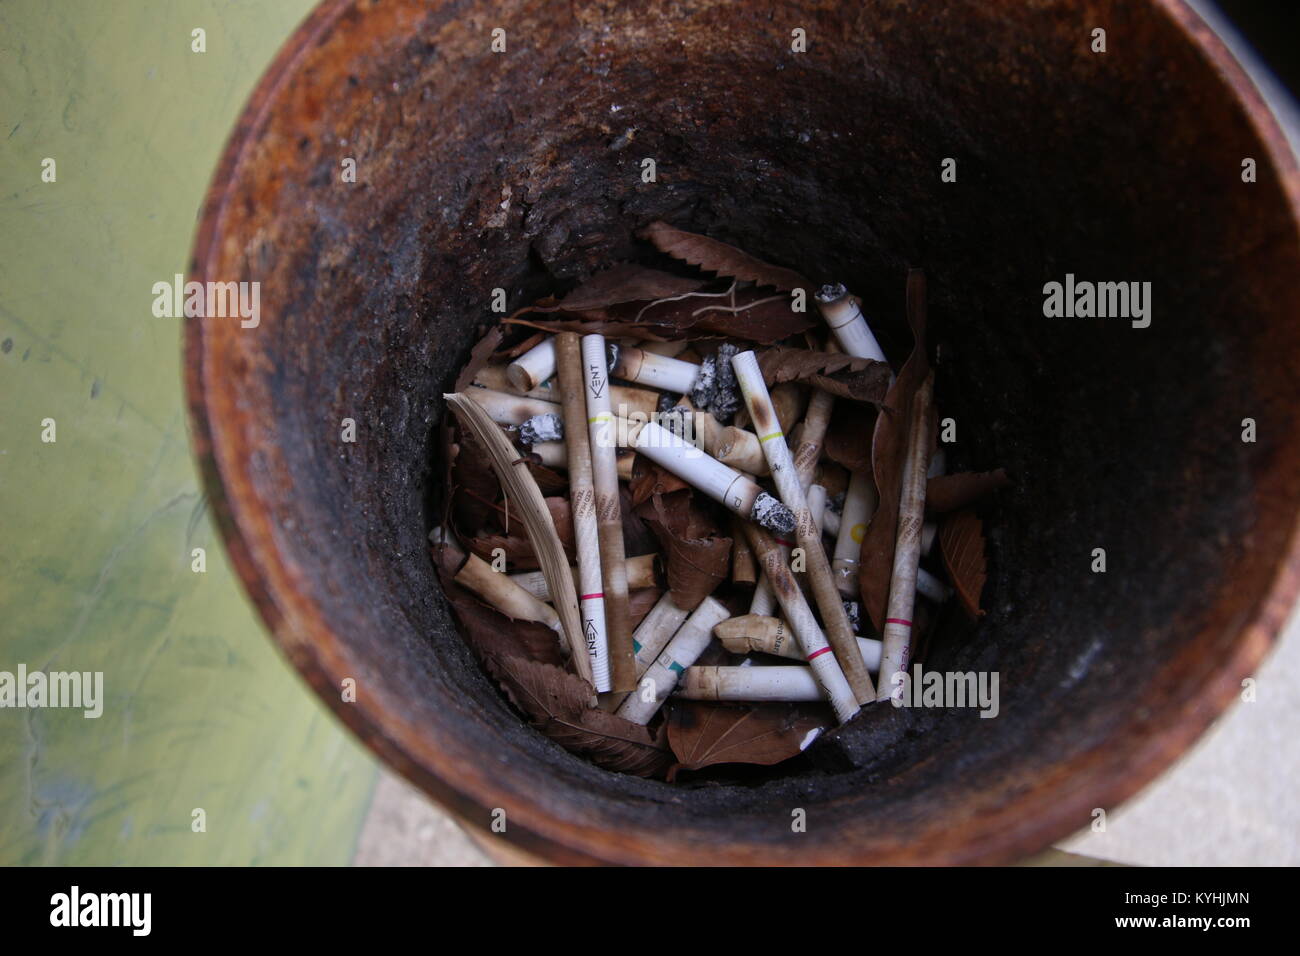 Mozziconi di sigaretta e foglie marrone all'interno di rusty portacenere Foto Stock